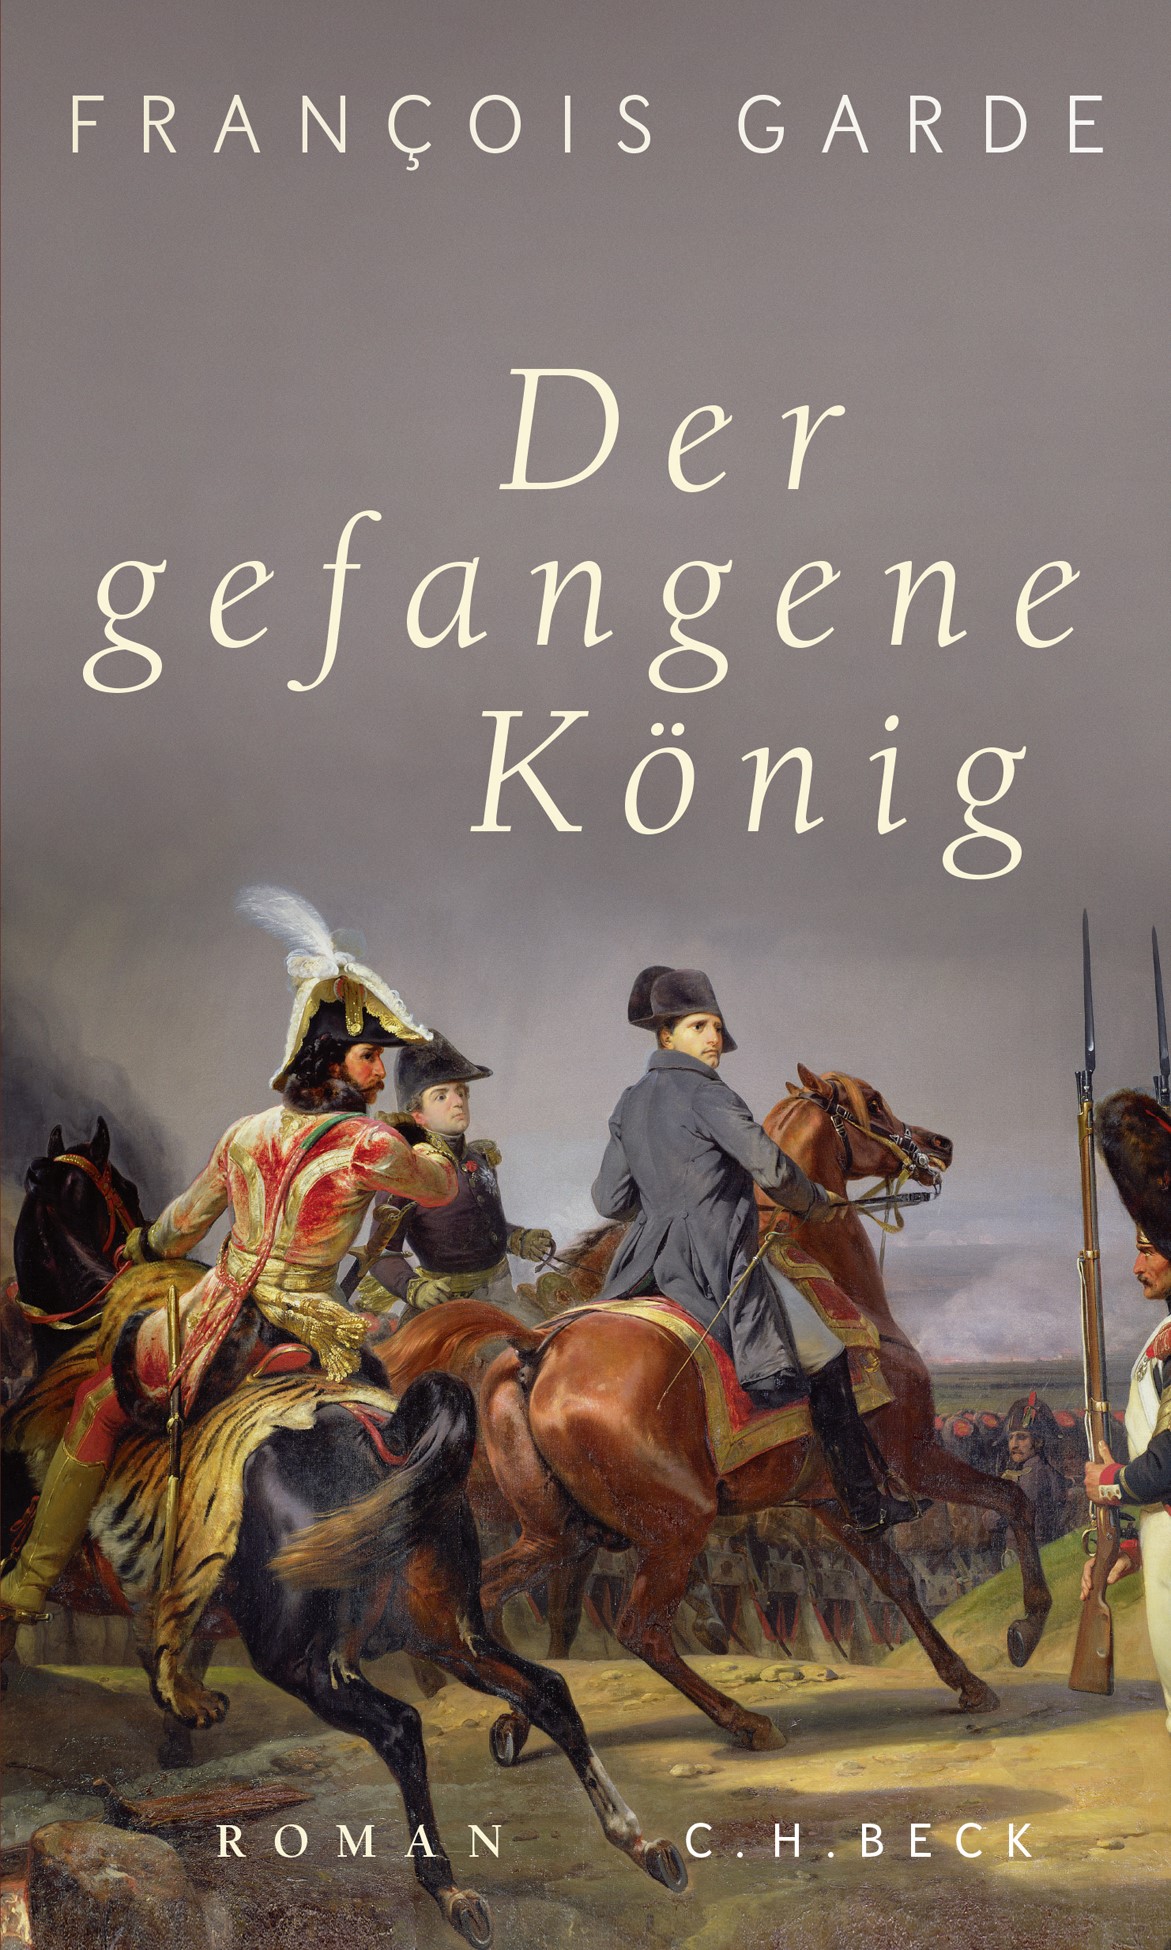 Cover: Garde, François, Der gefangene König